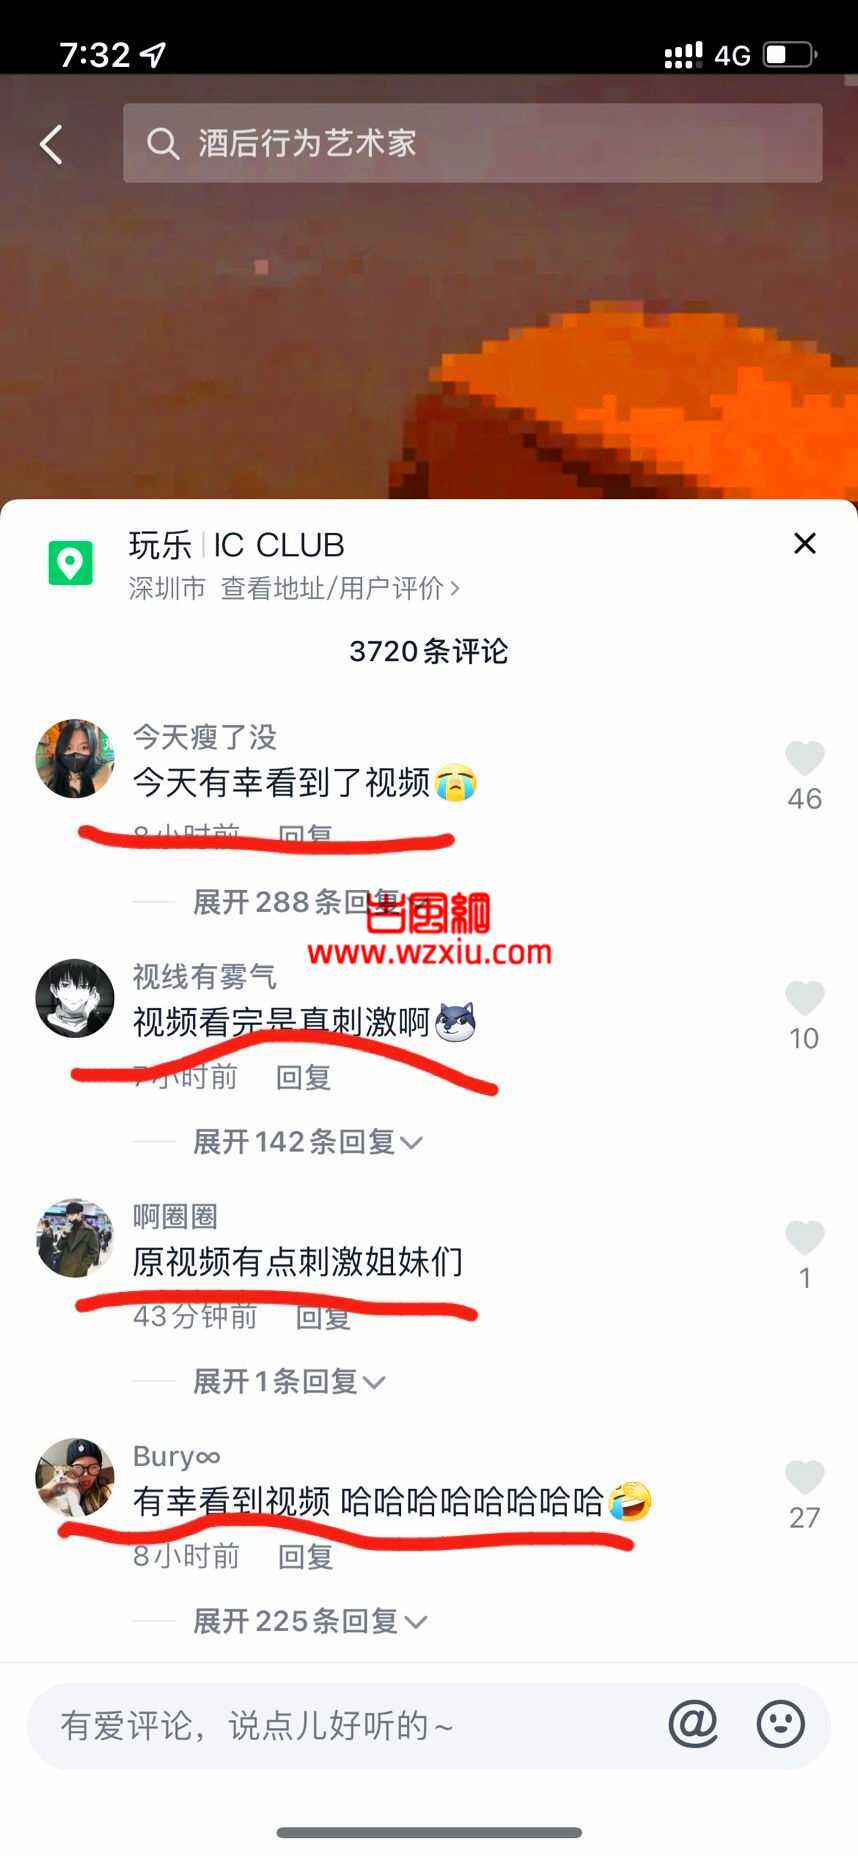 抖音深圳IC CLUB酒吧马路视频事件是什么梗？